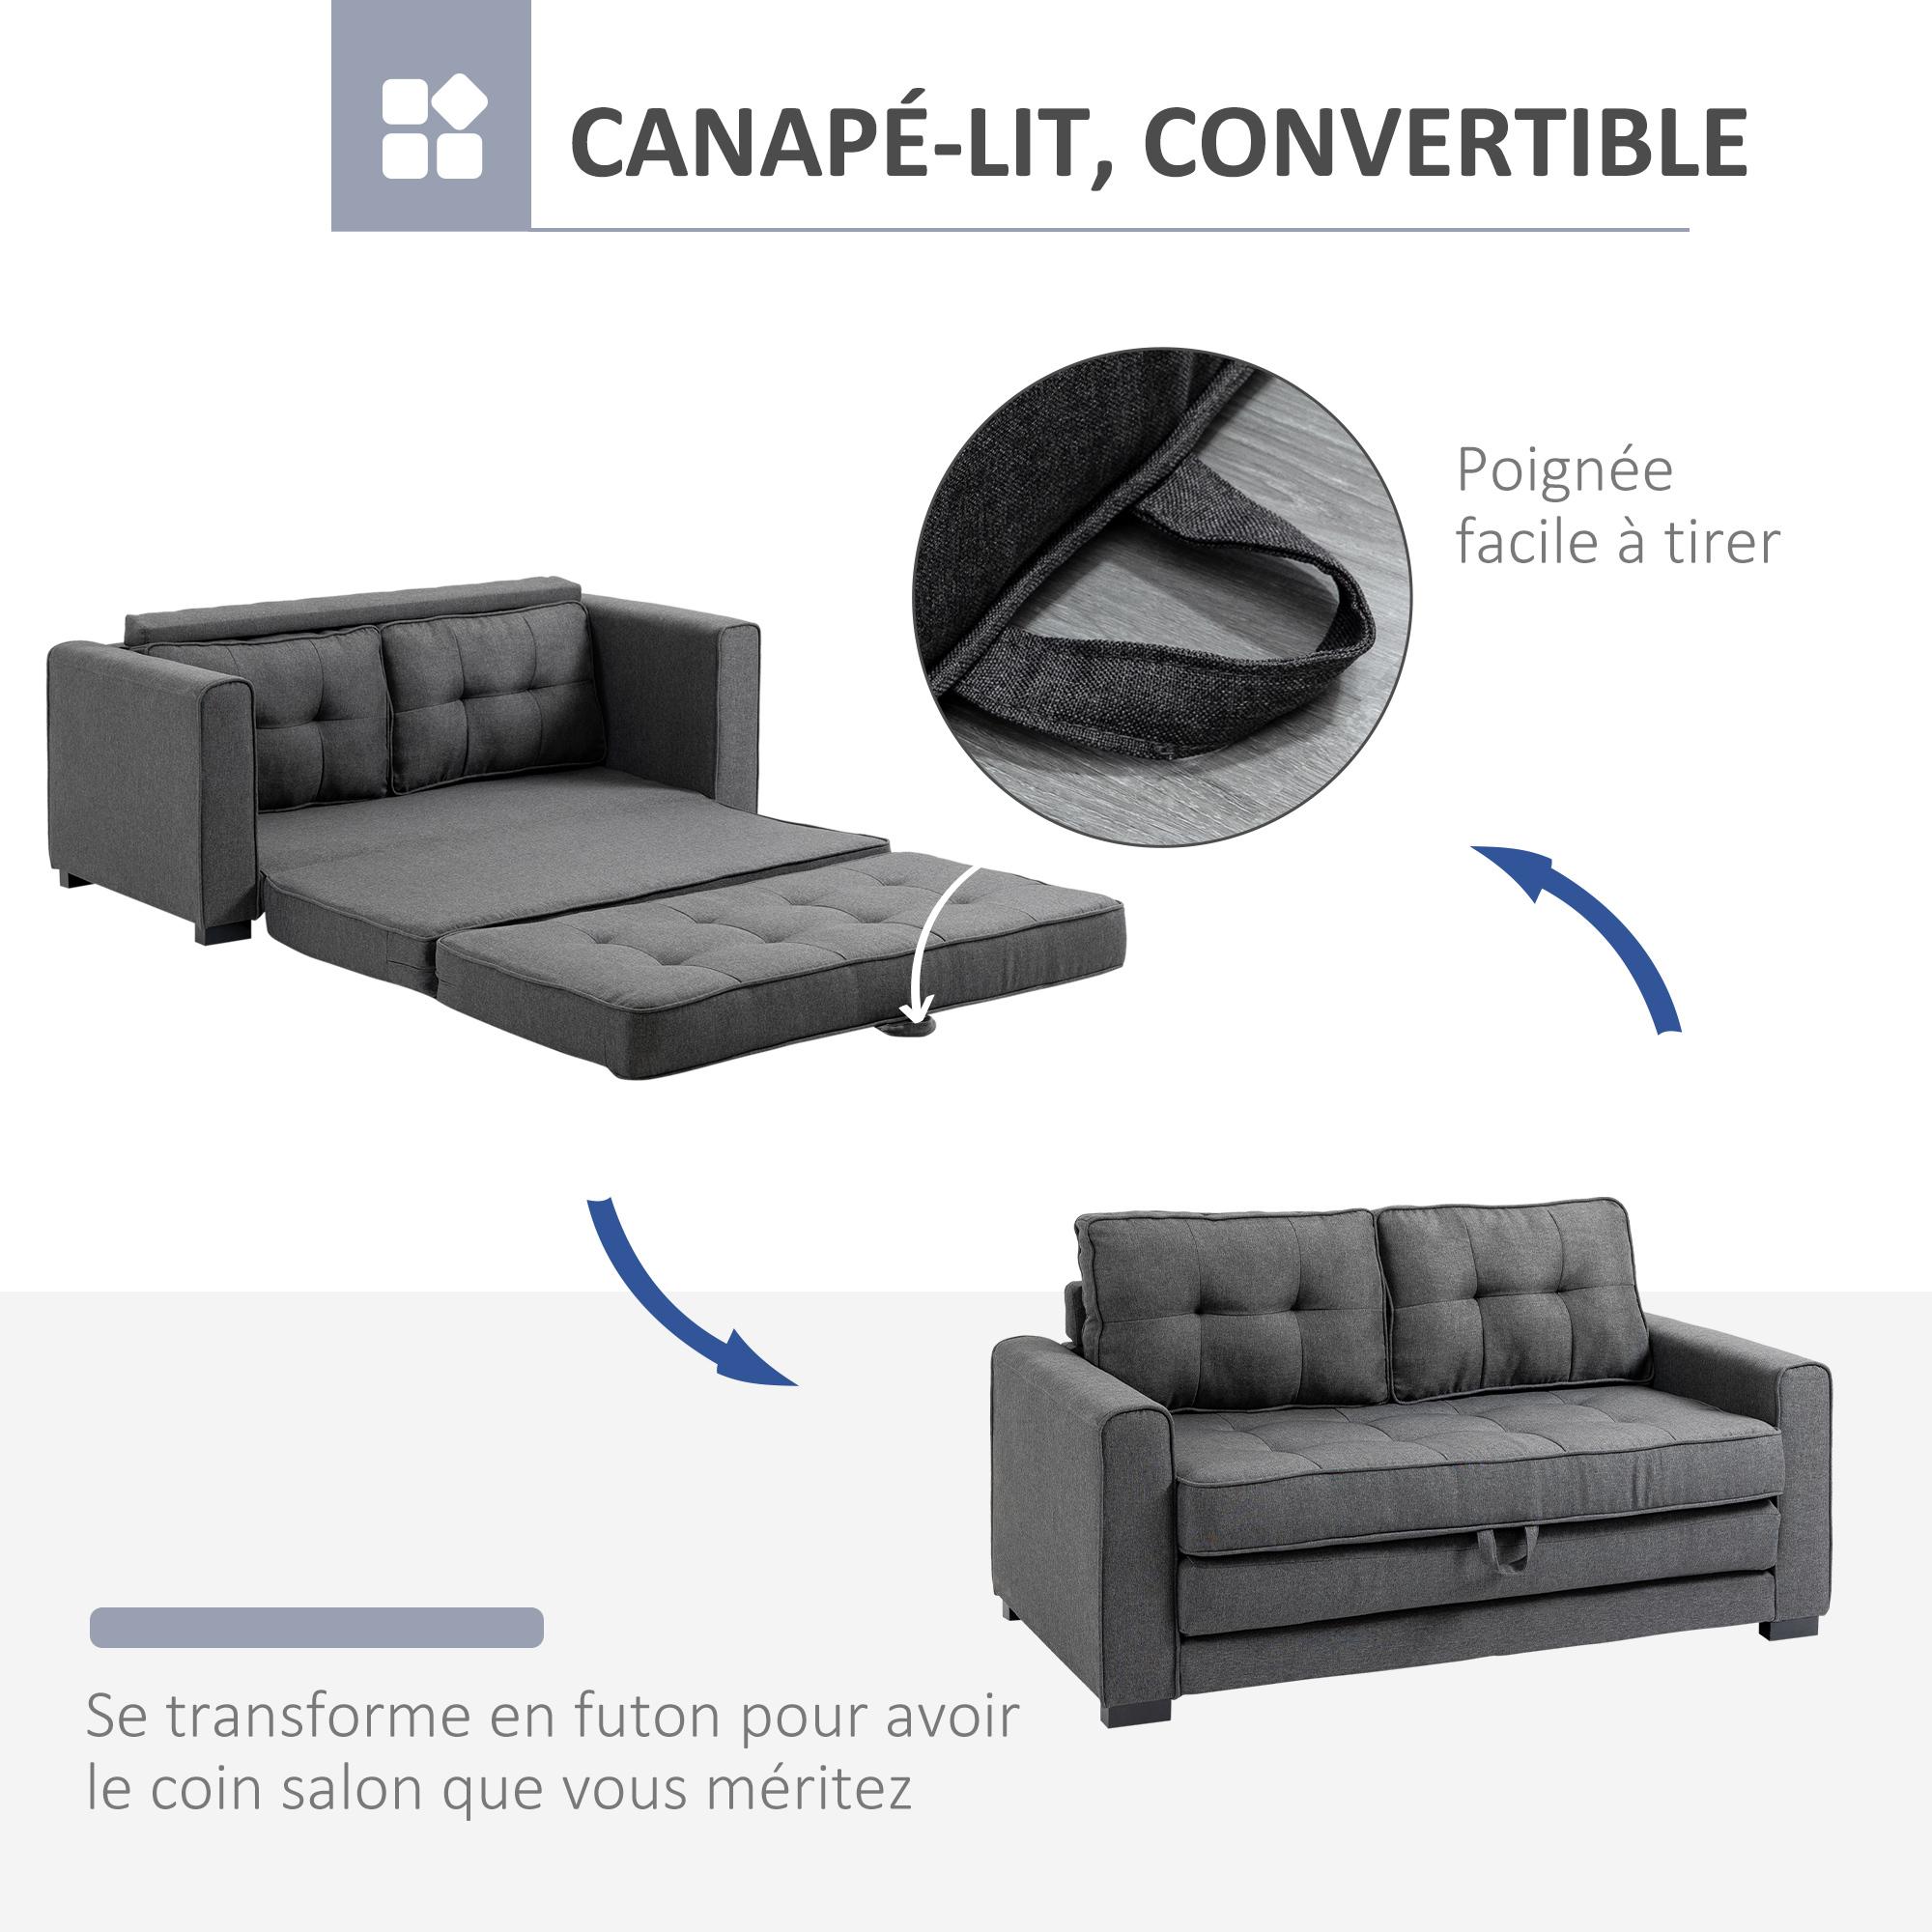 Canapé convertible 2 places design contemporain assise dossier capitonnés polyester aspect lin gris